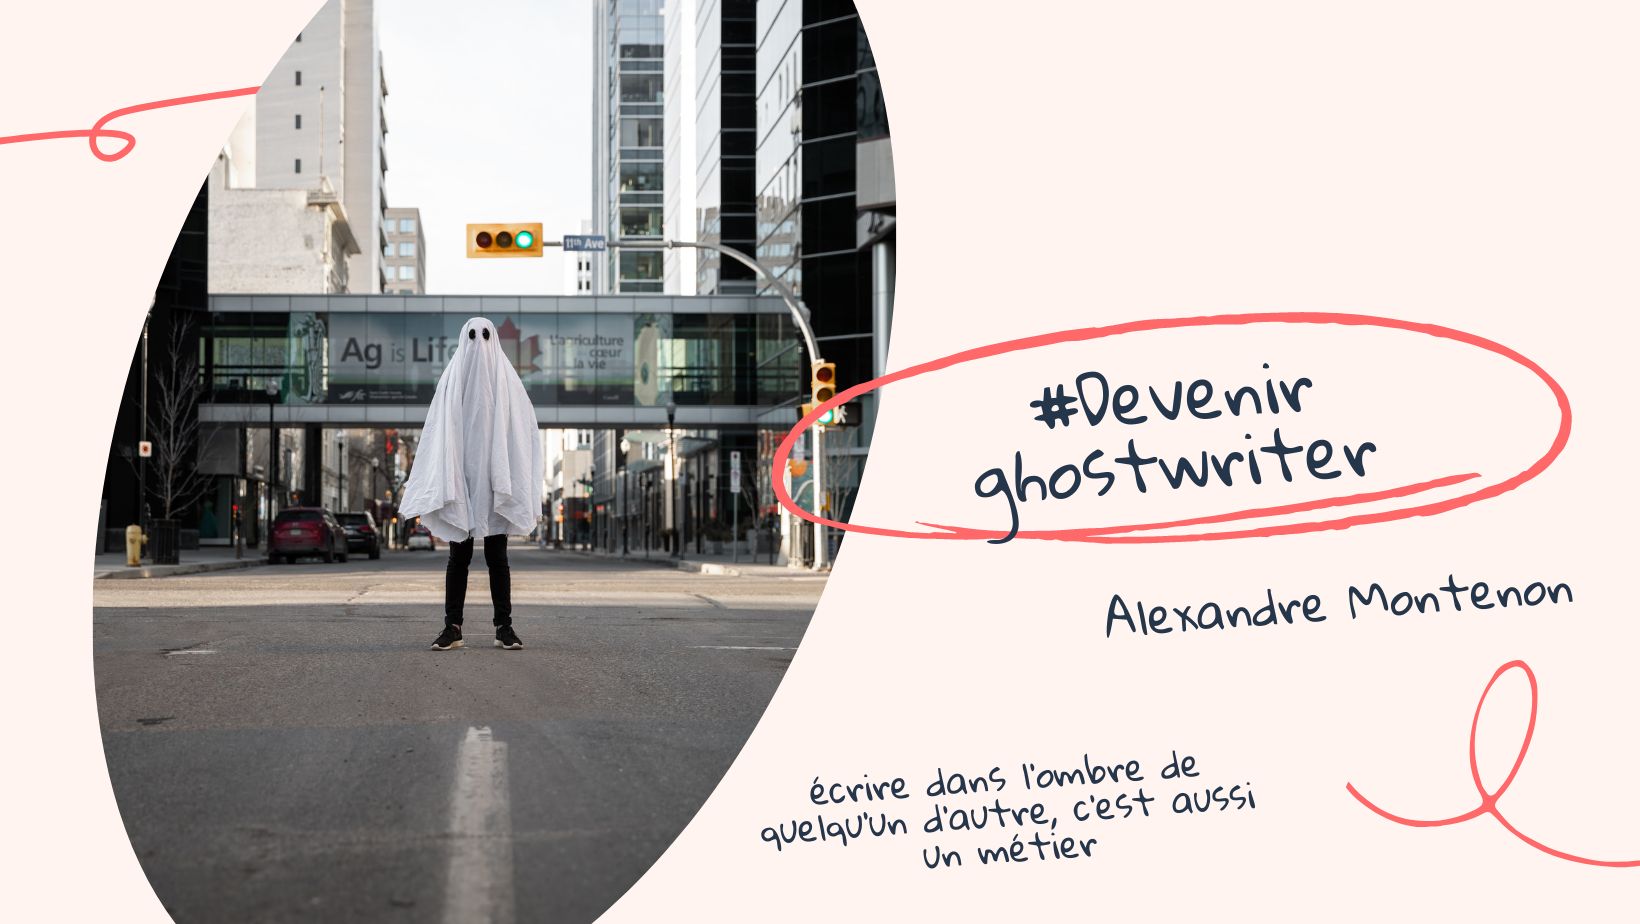 Devenir ghostwriter | Alexandre Montenon